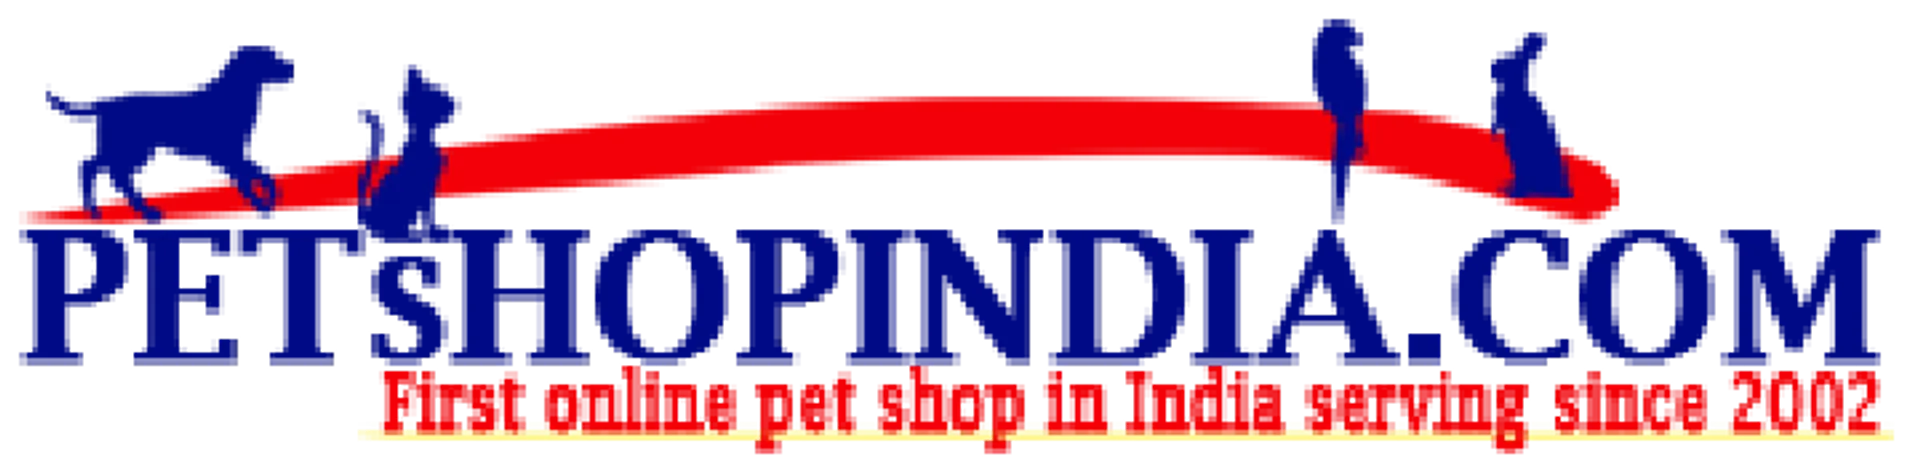 PETSHOP INDIA logo. Current weekly ad